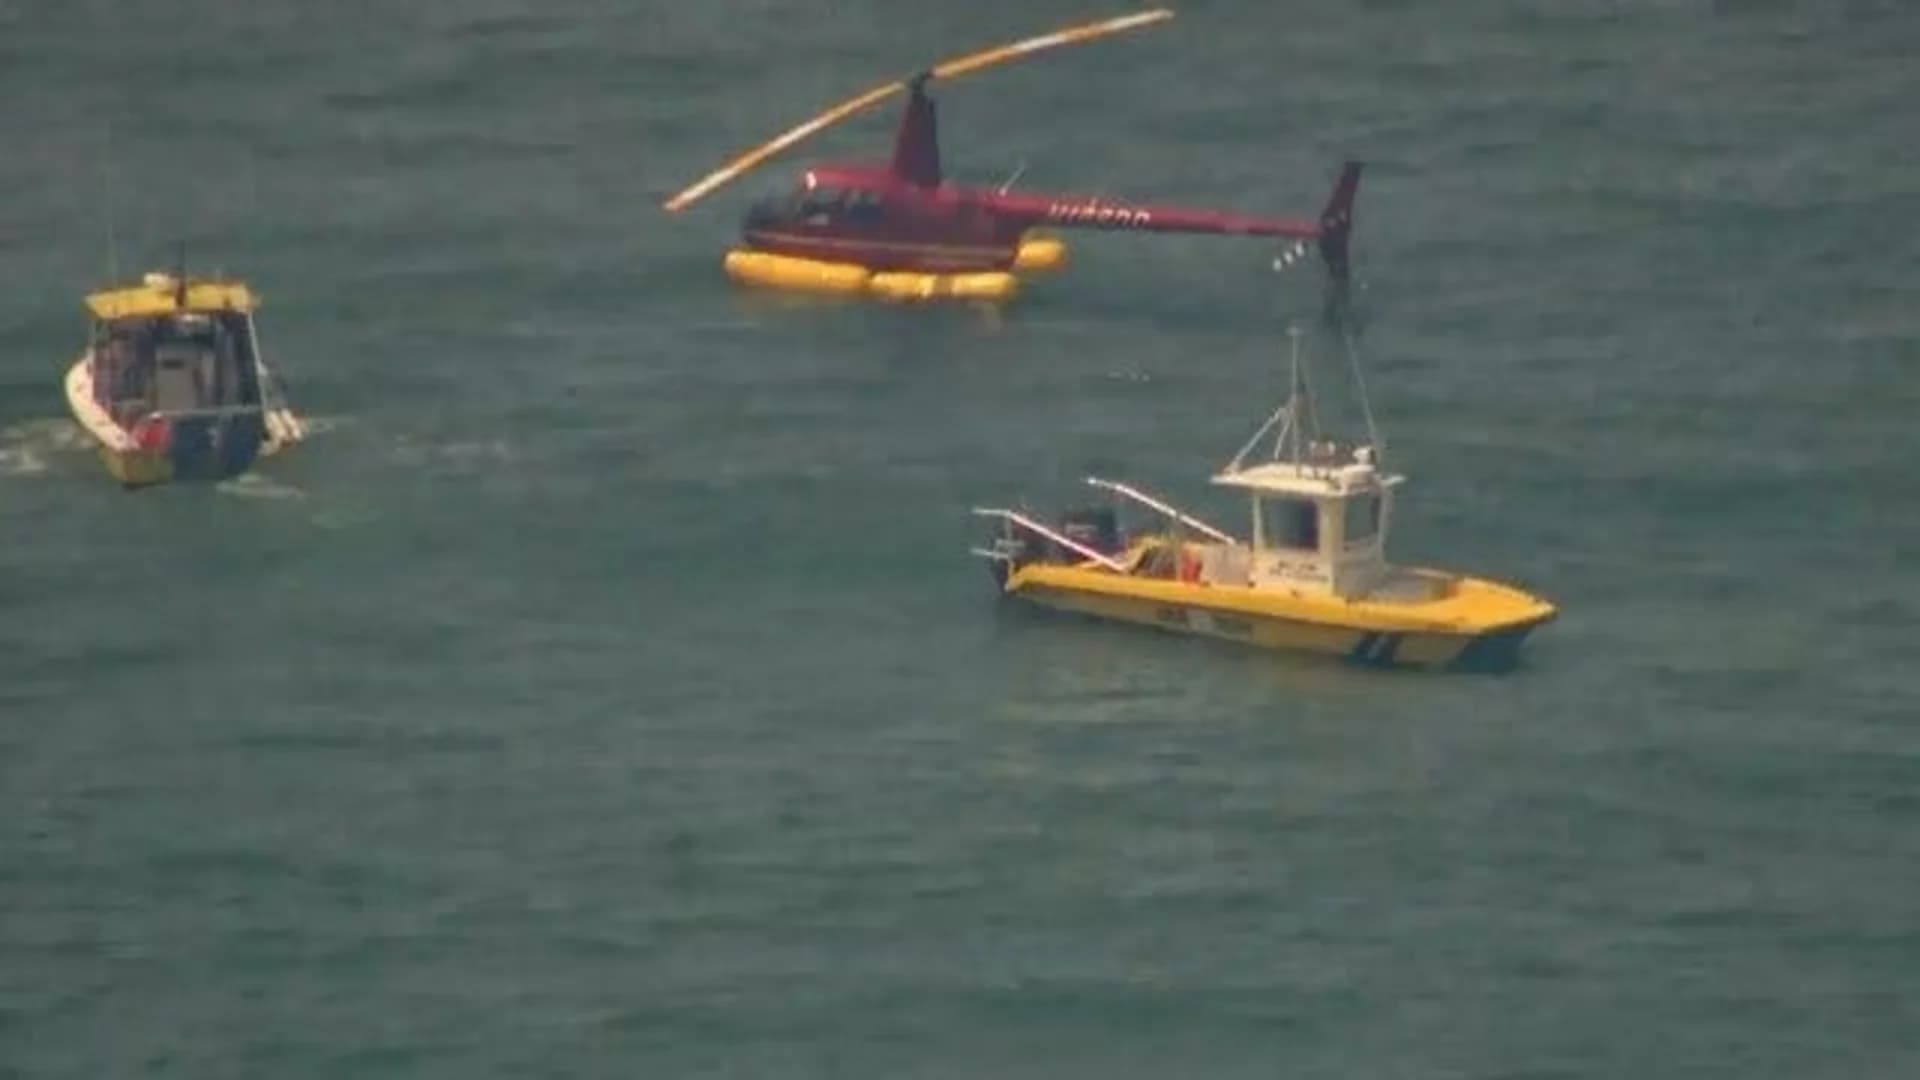 Photos: Chopper makes hard landing at Gilgo Beach